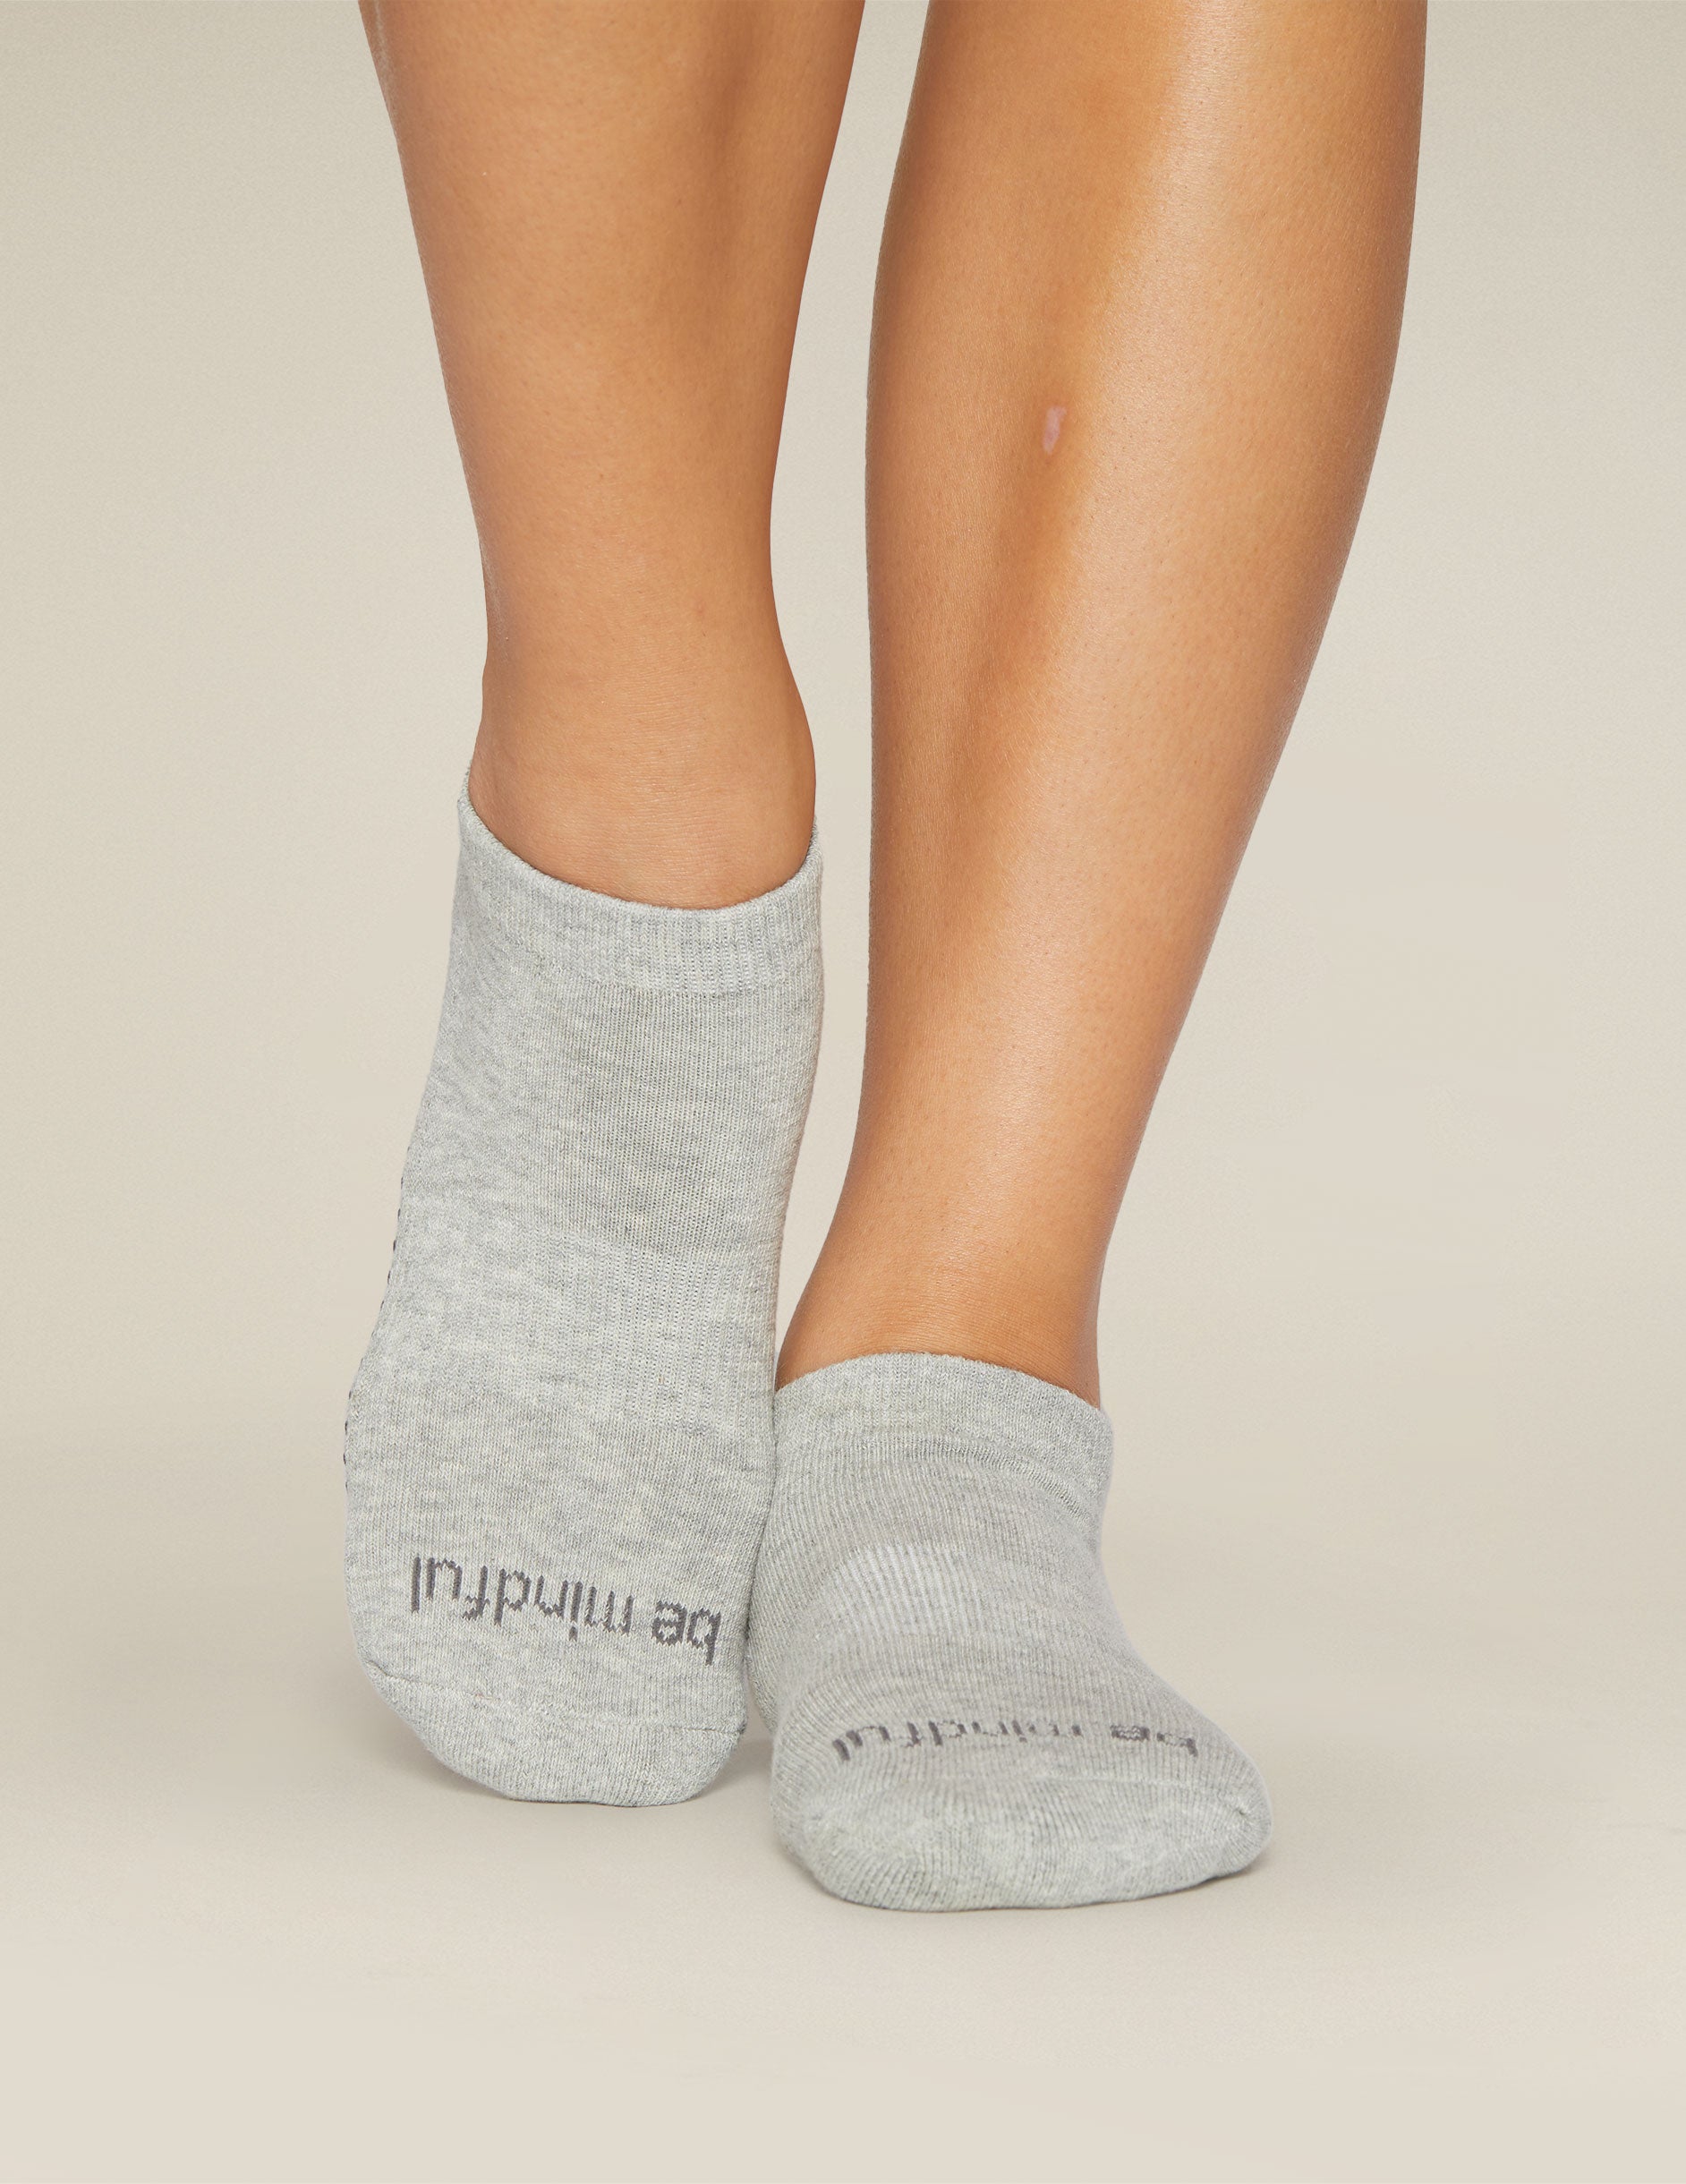 Yoga Socks Women Full Toe Sock Non Slip Sticky Gripper Socks with Strap